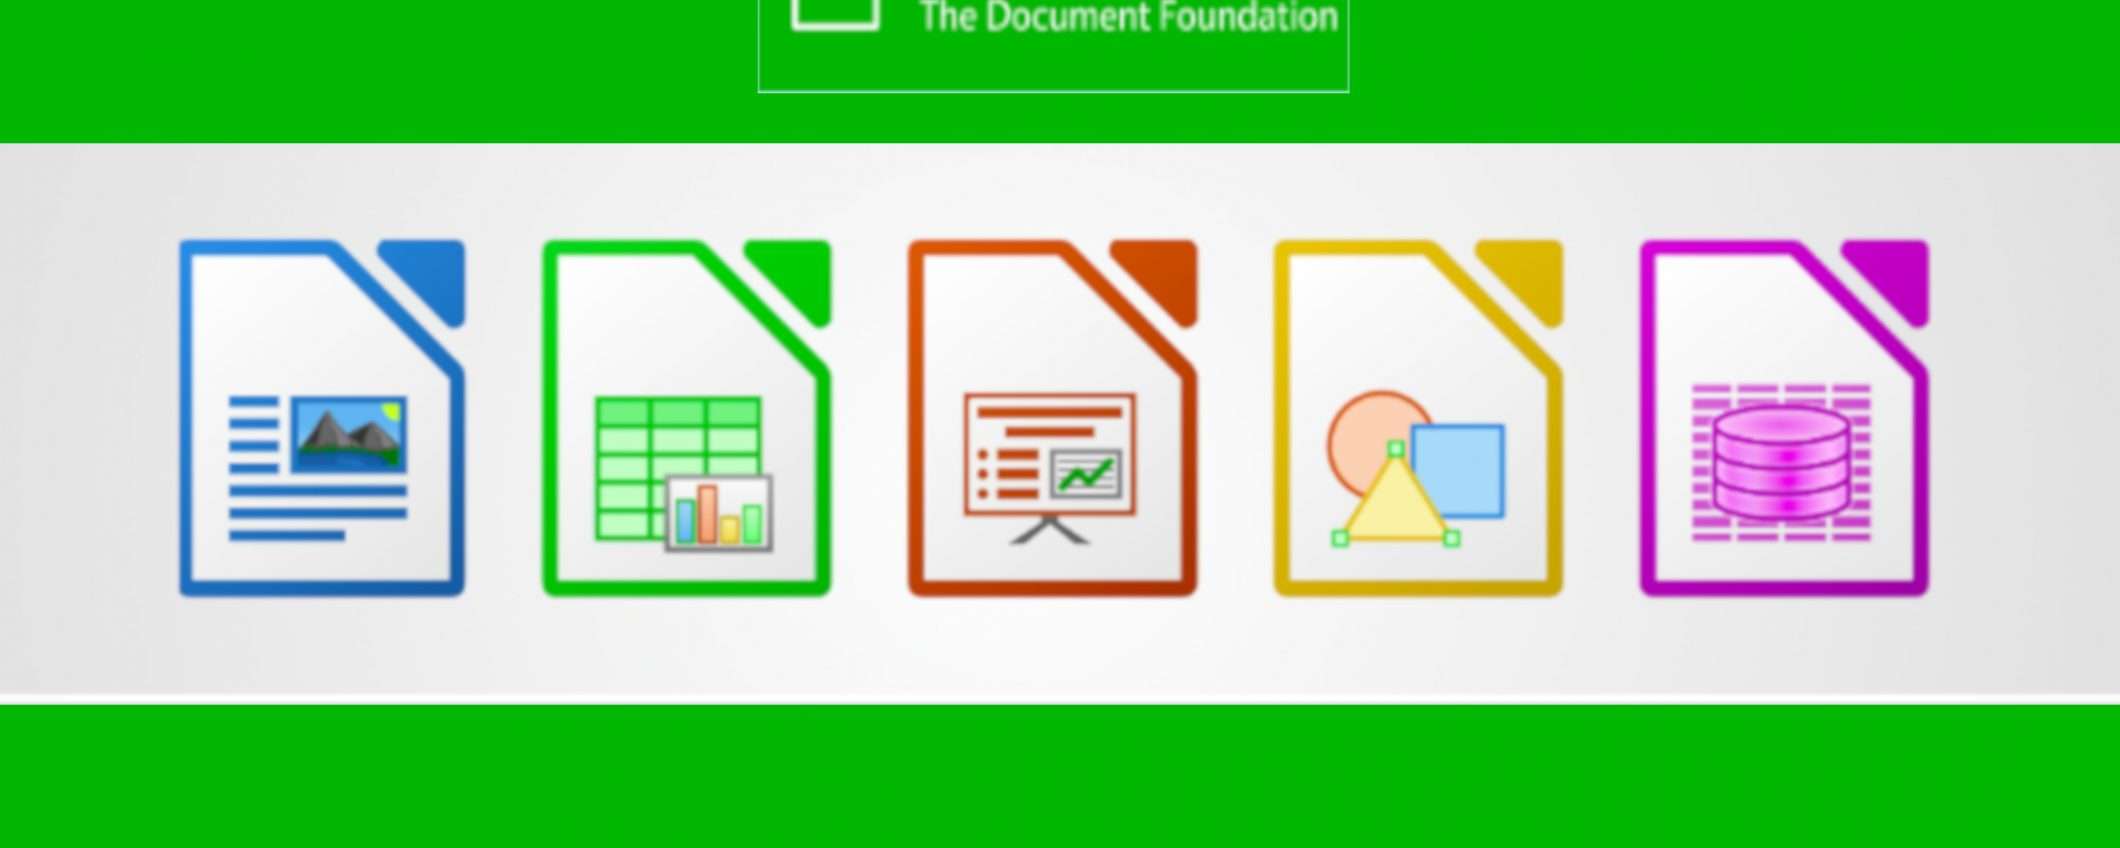 LibreOffice: guida pratica e novità versione 7